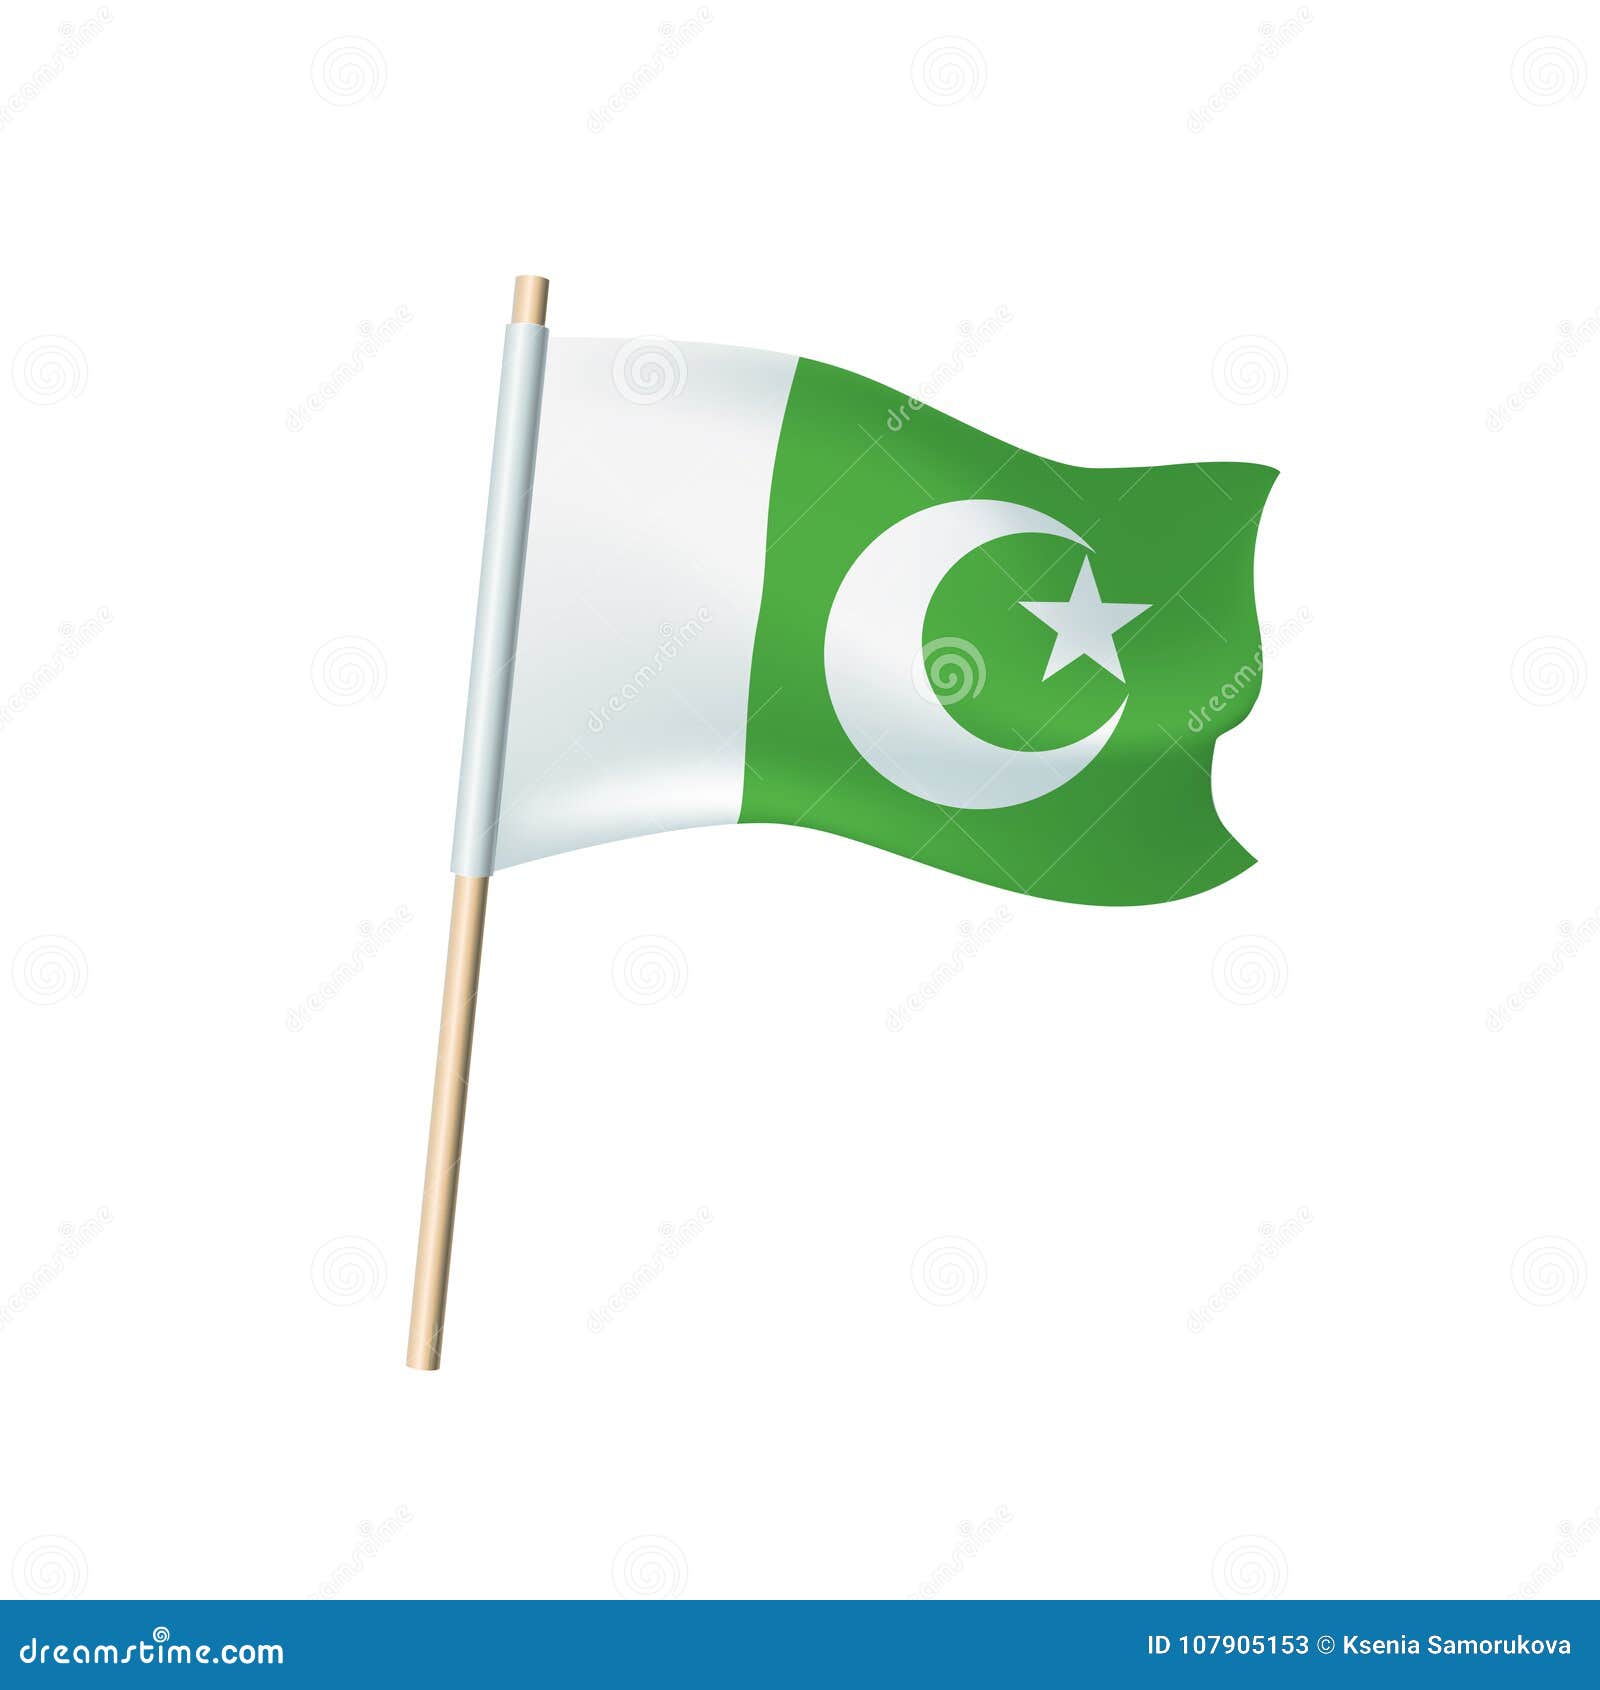 Зеленый флаг с луной. Зелёный флаг с полумесяцем и звездой. Зеленый флаг. Бело зеленый флаг. Зелено белый флаг с полумесяцем.